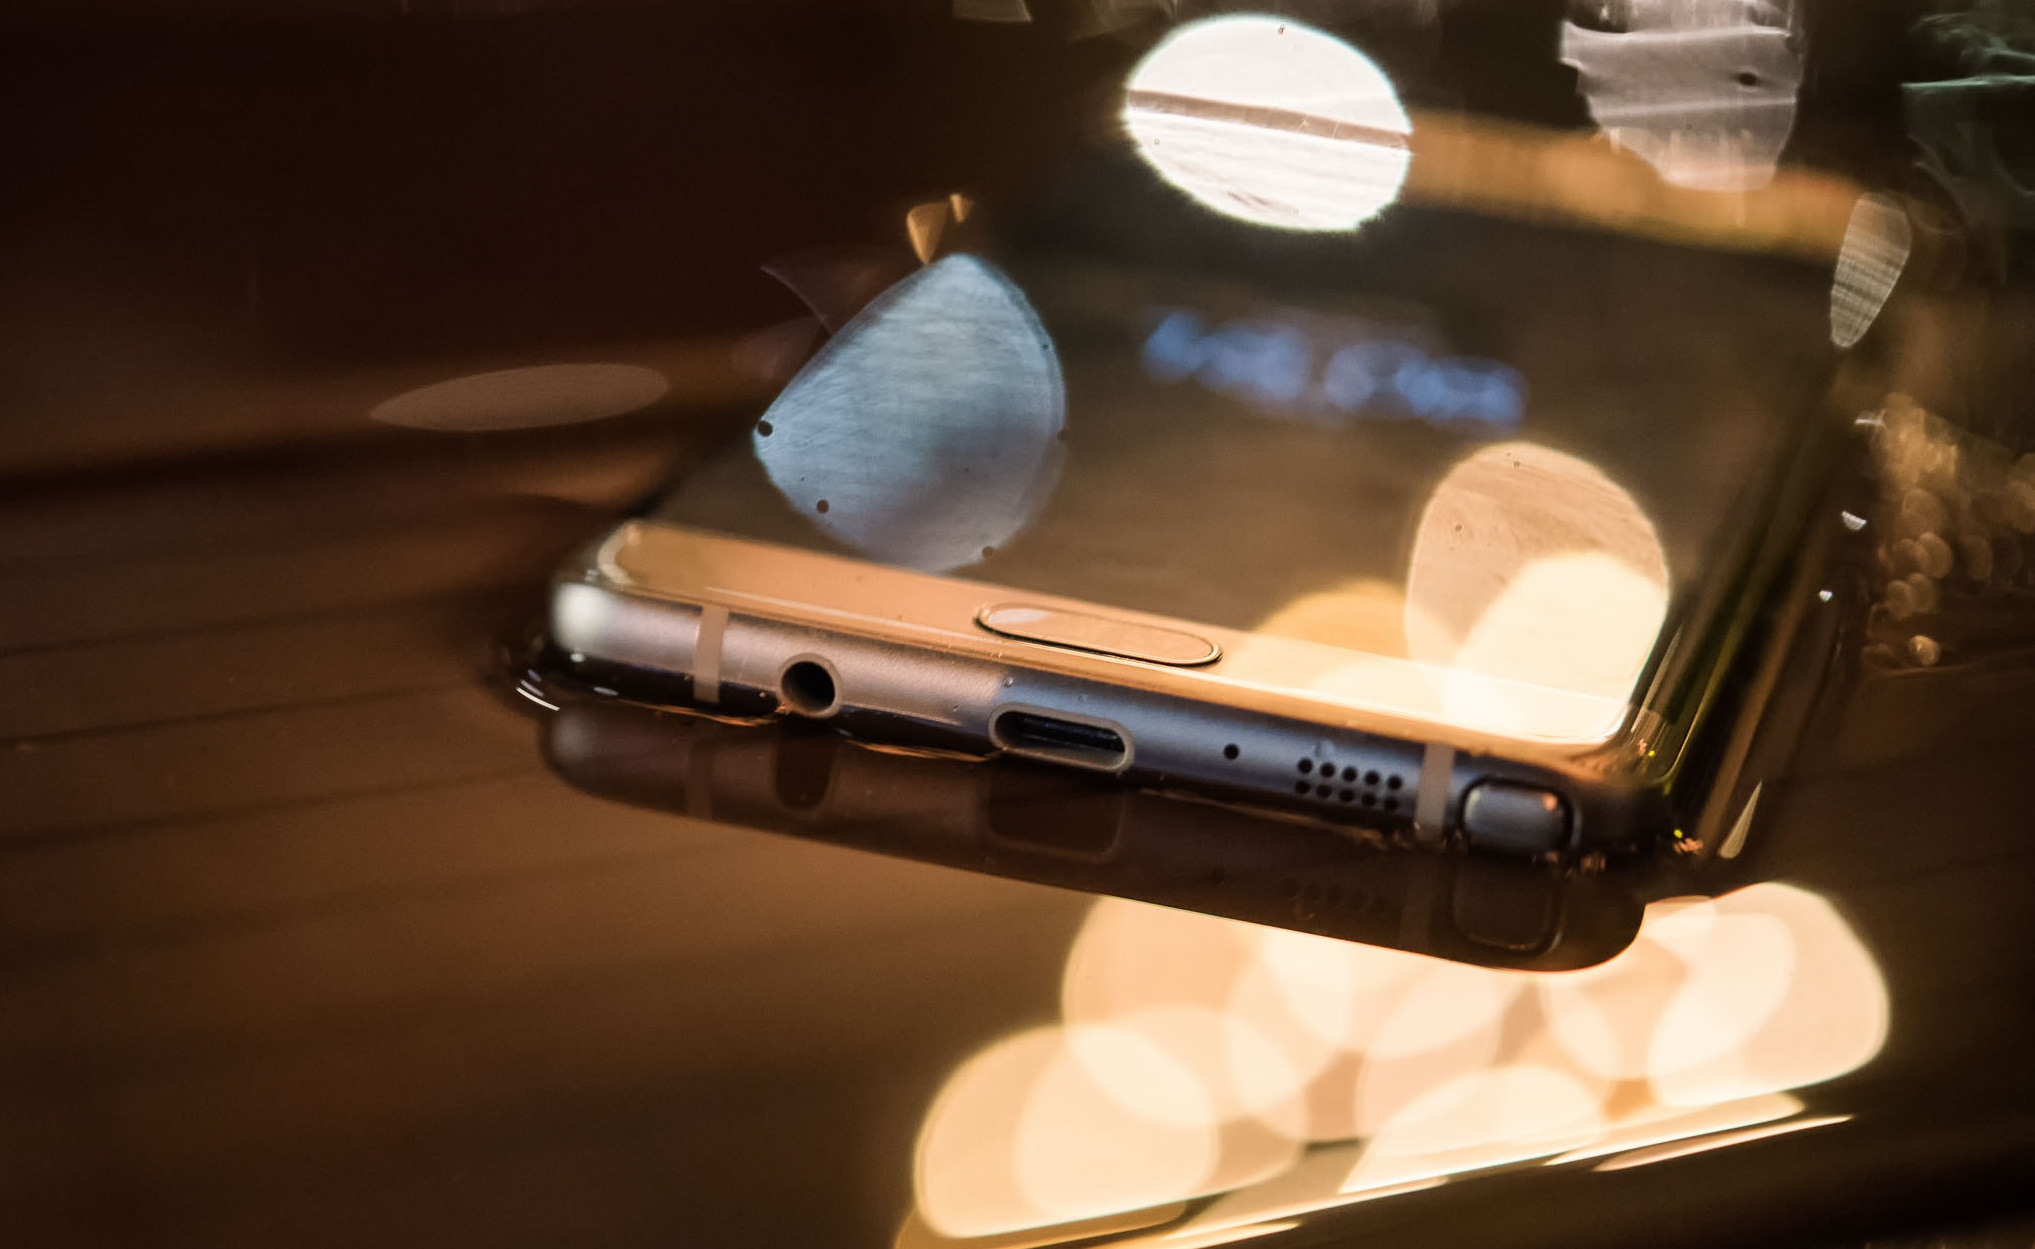 Cùng ngắm thêm một số hình ảnh về Samsung Galaxy Note 7: